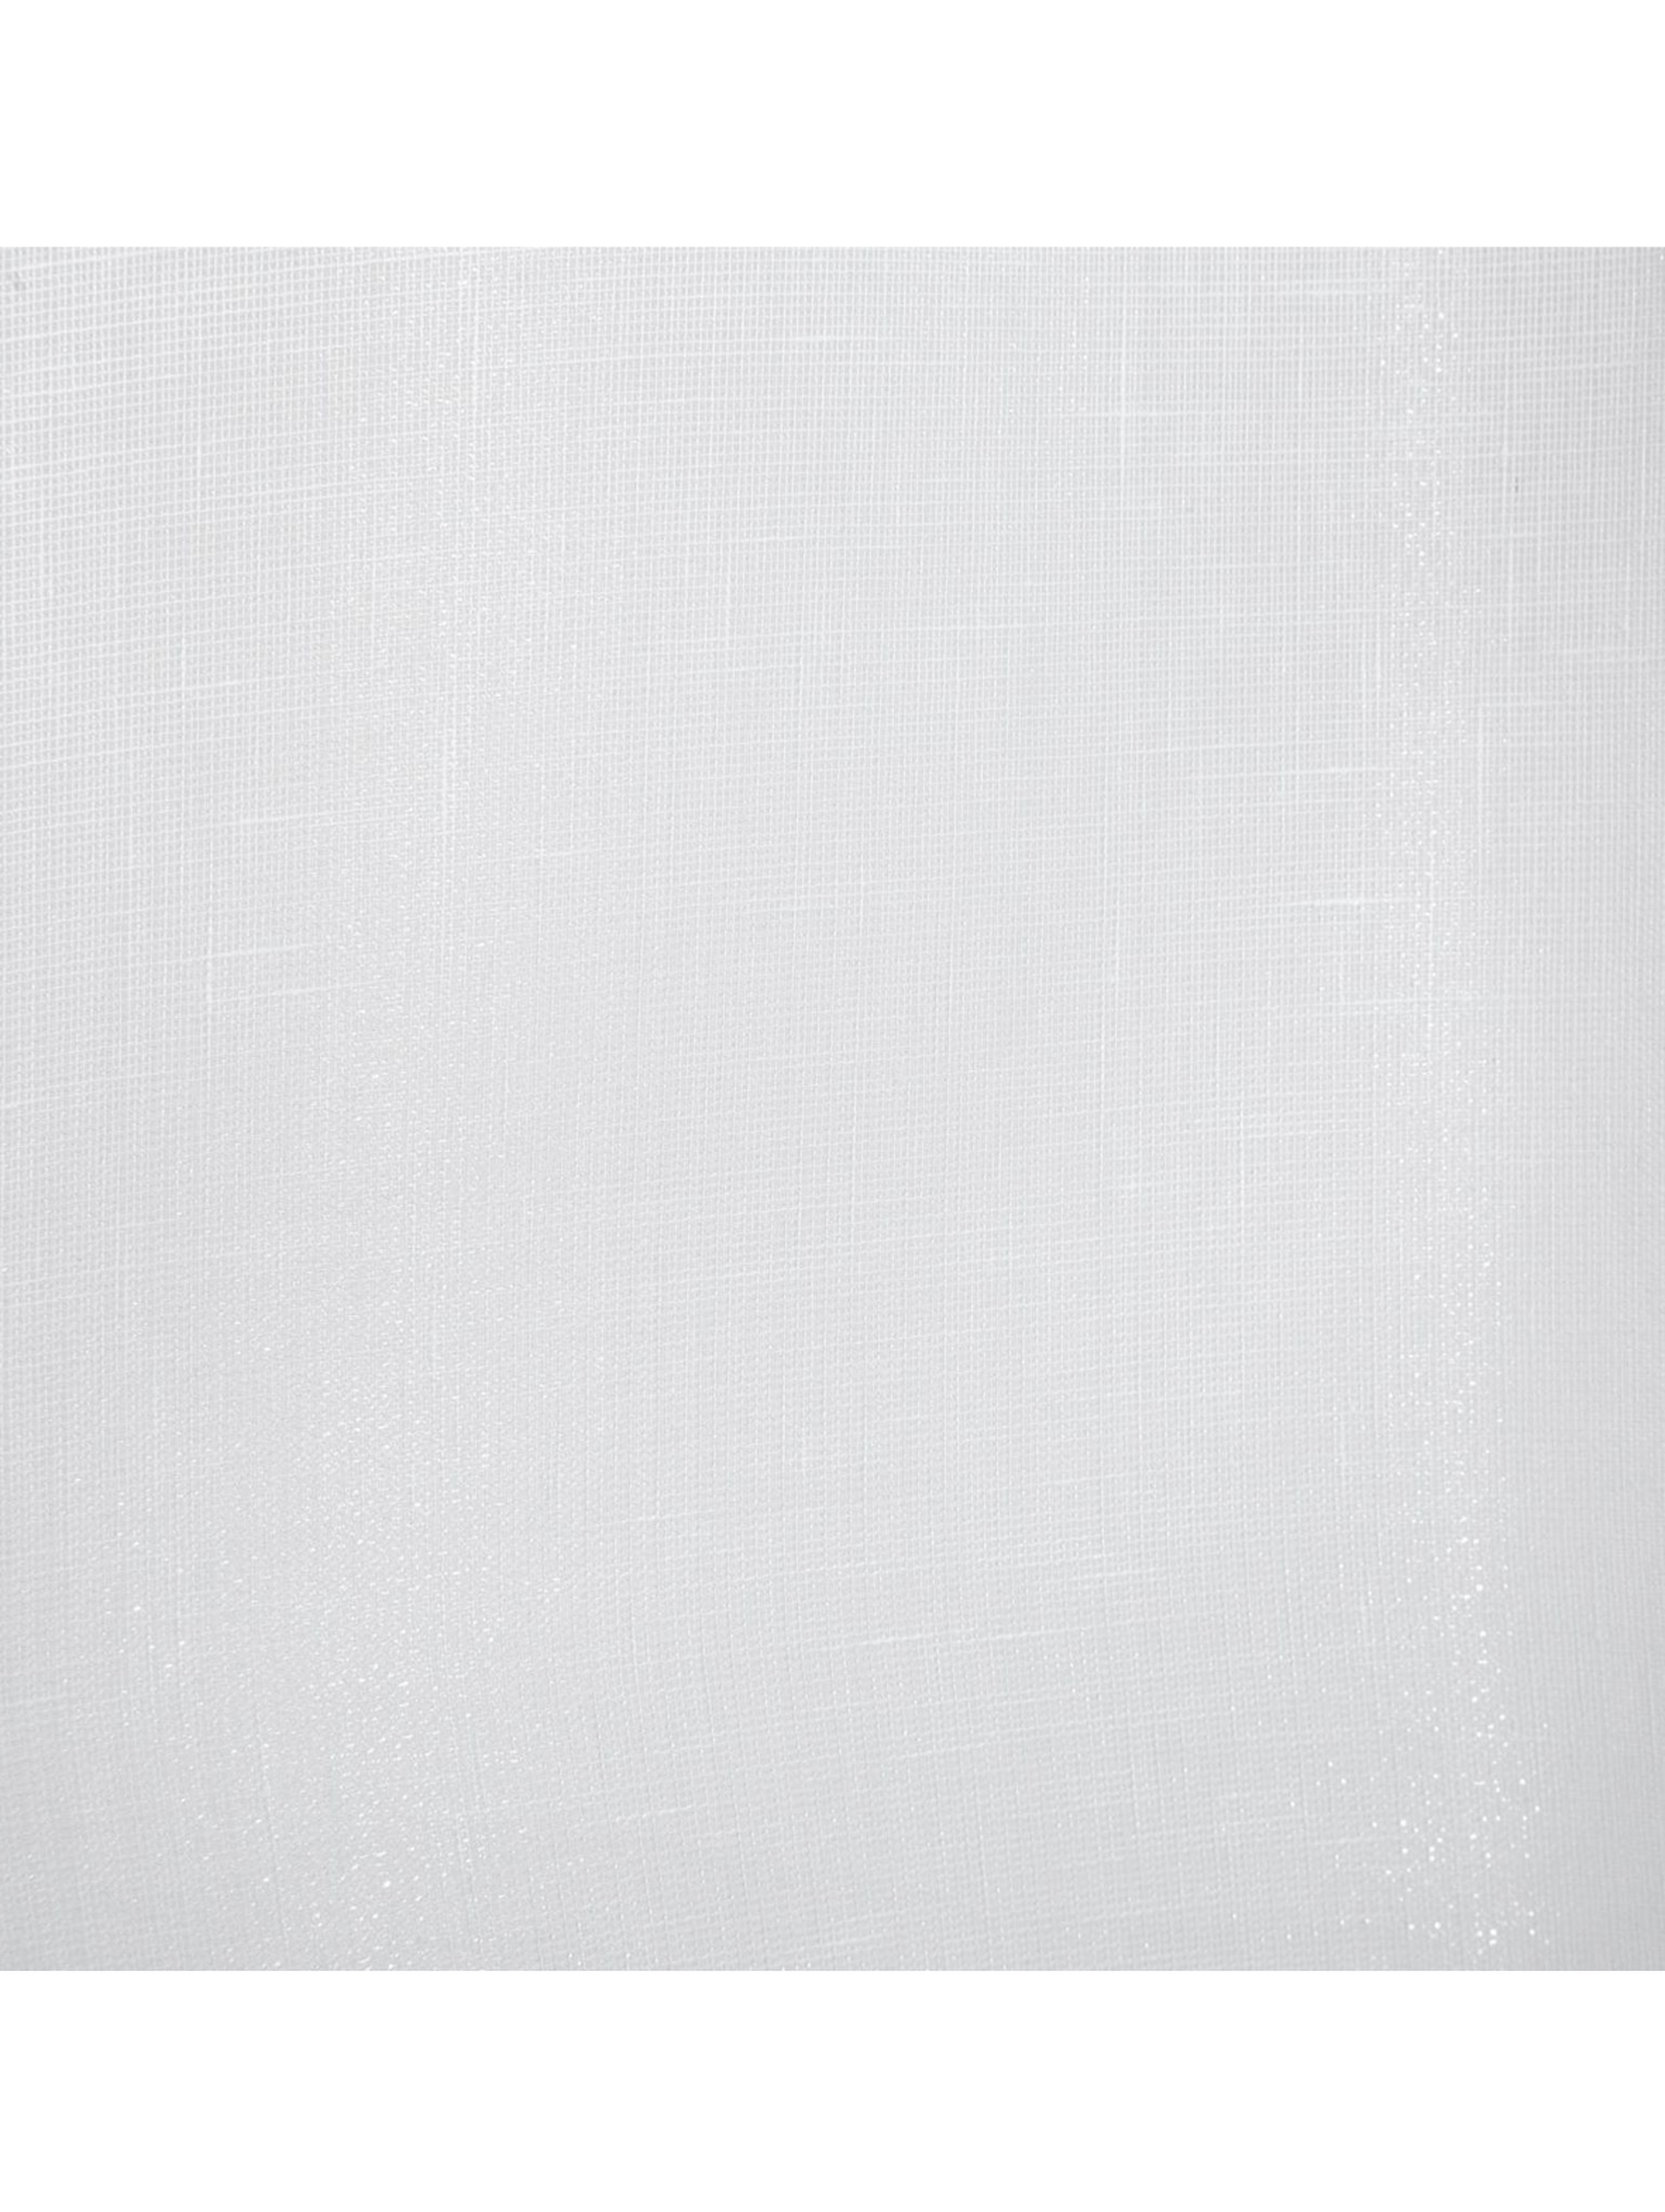 Biała firana na taśmie 300x145 cm